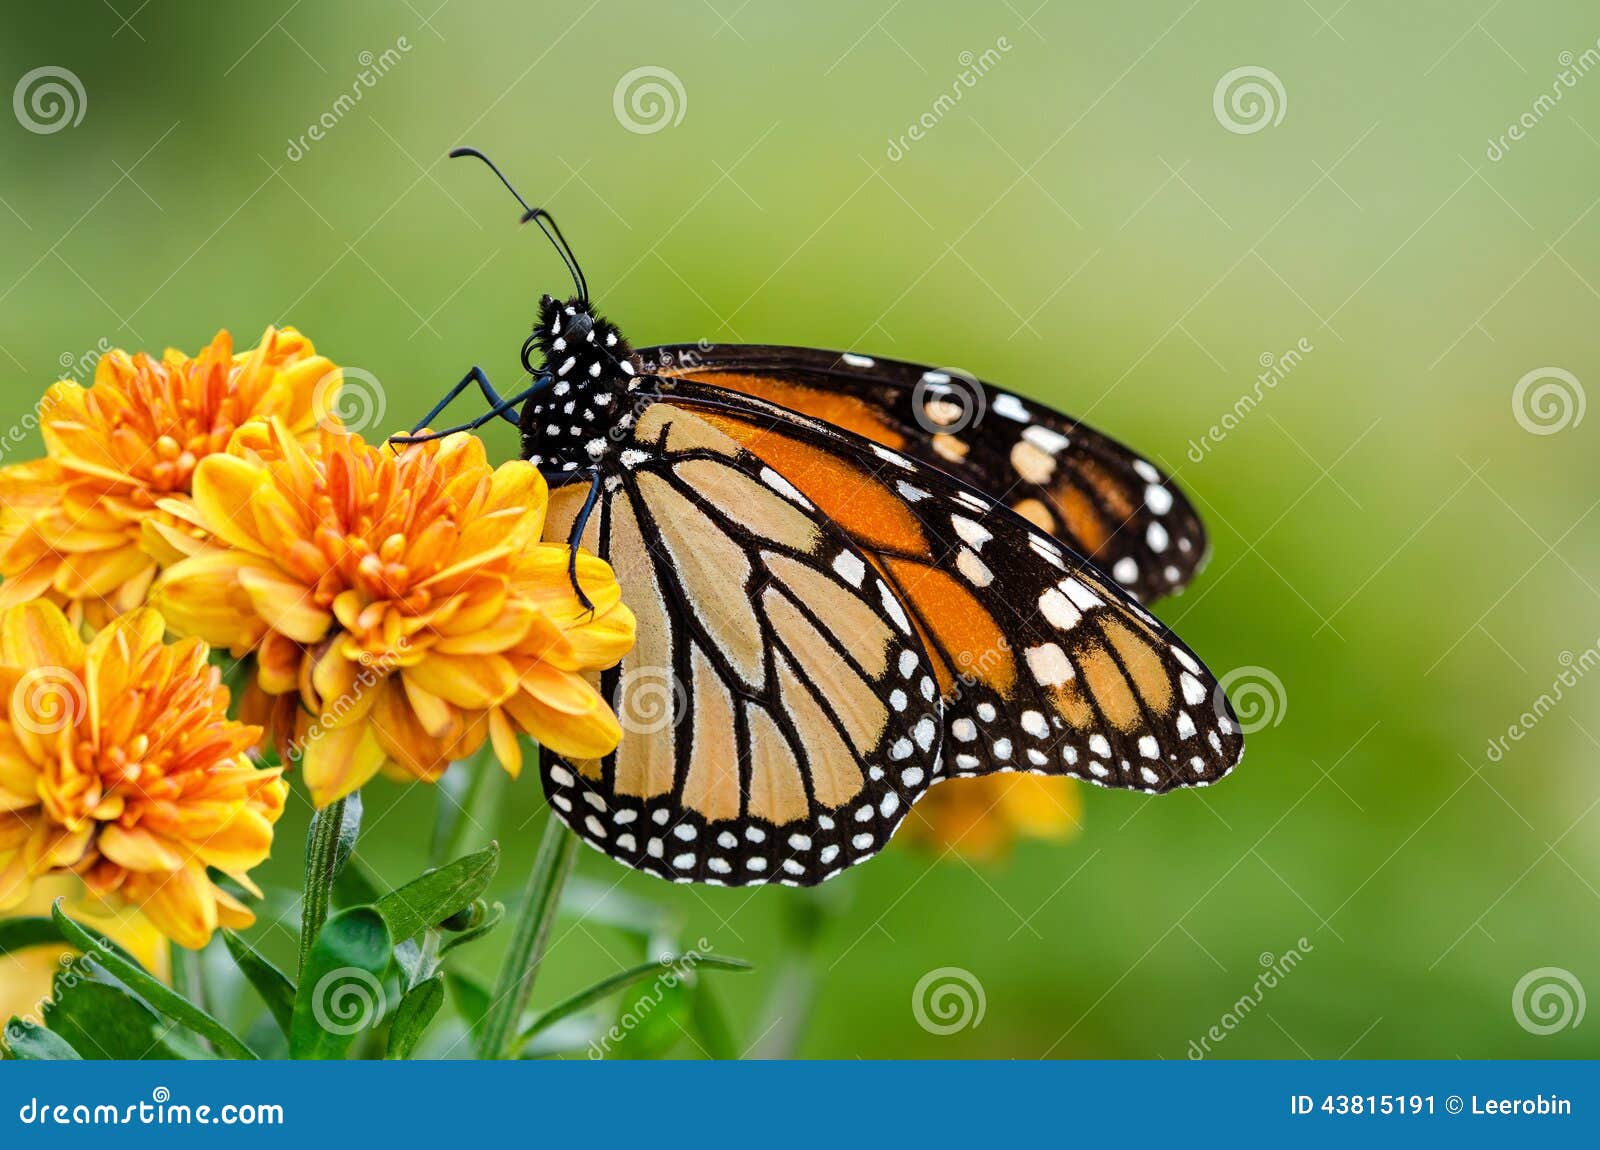 monarch butterfly (danaus plexippus) during autumn migration